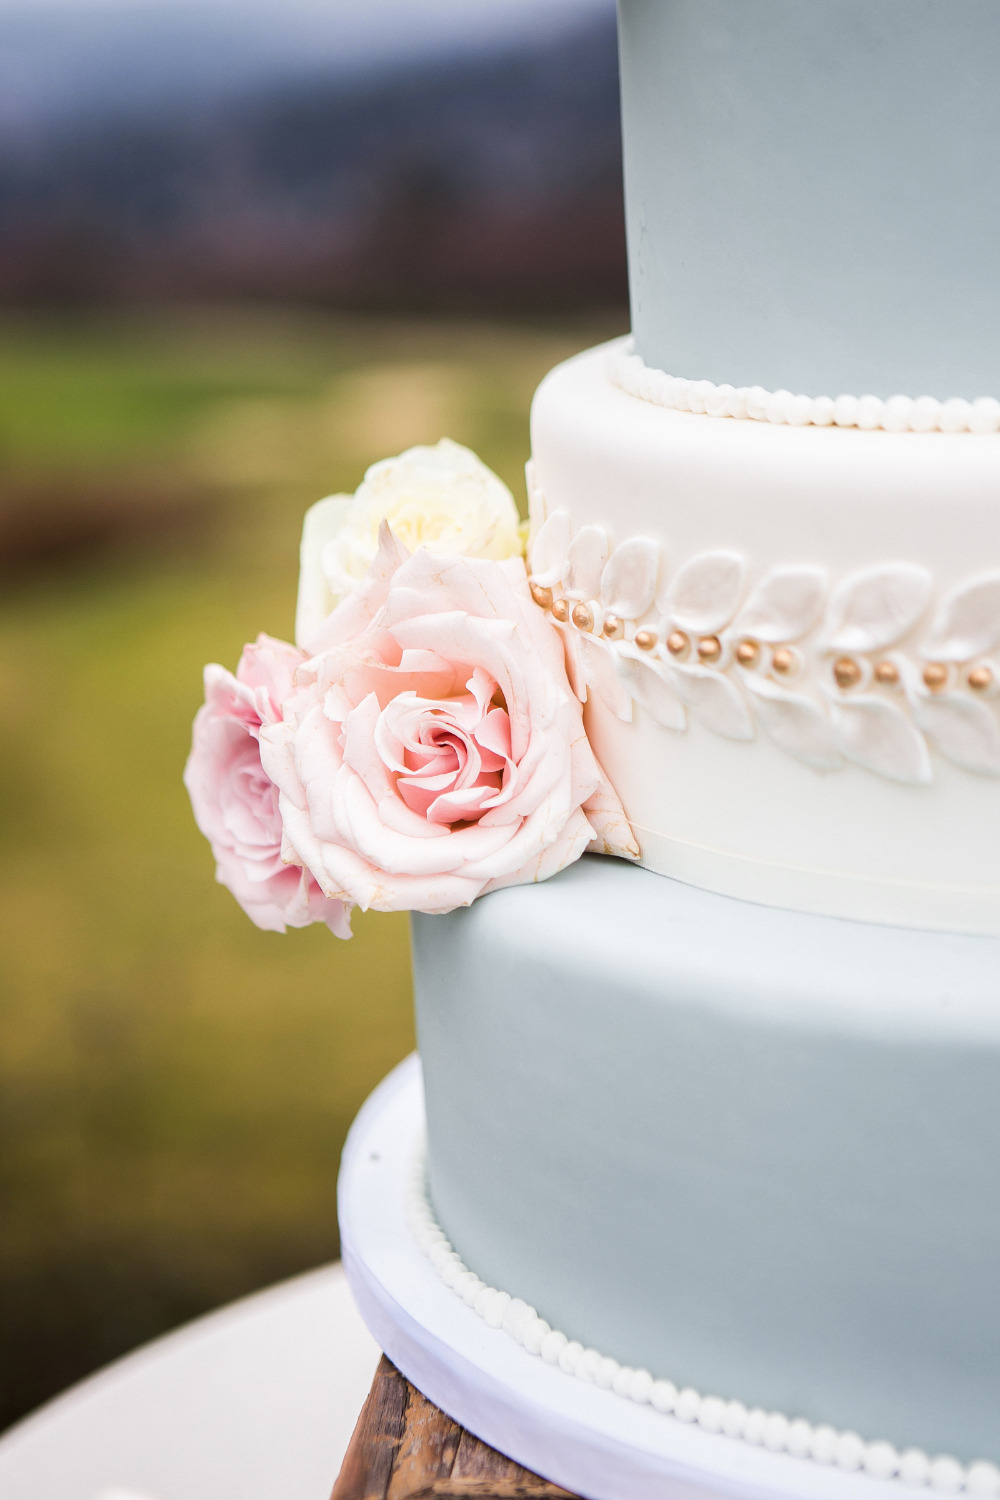 wedding cake floral details